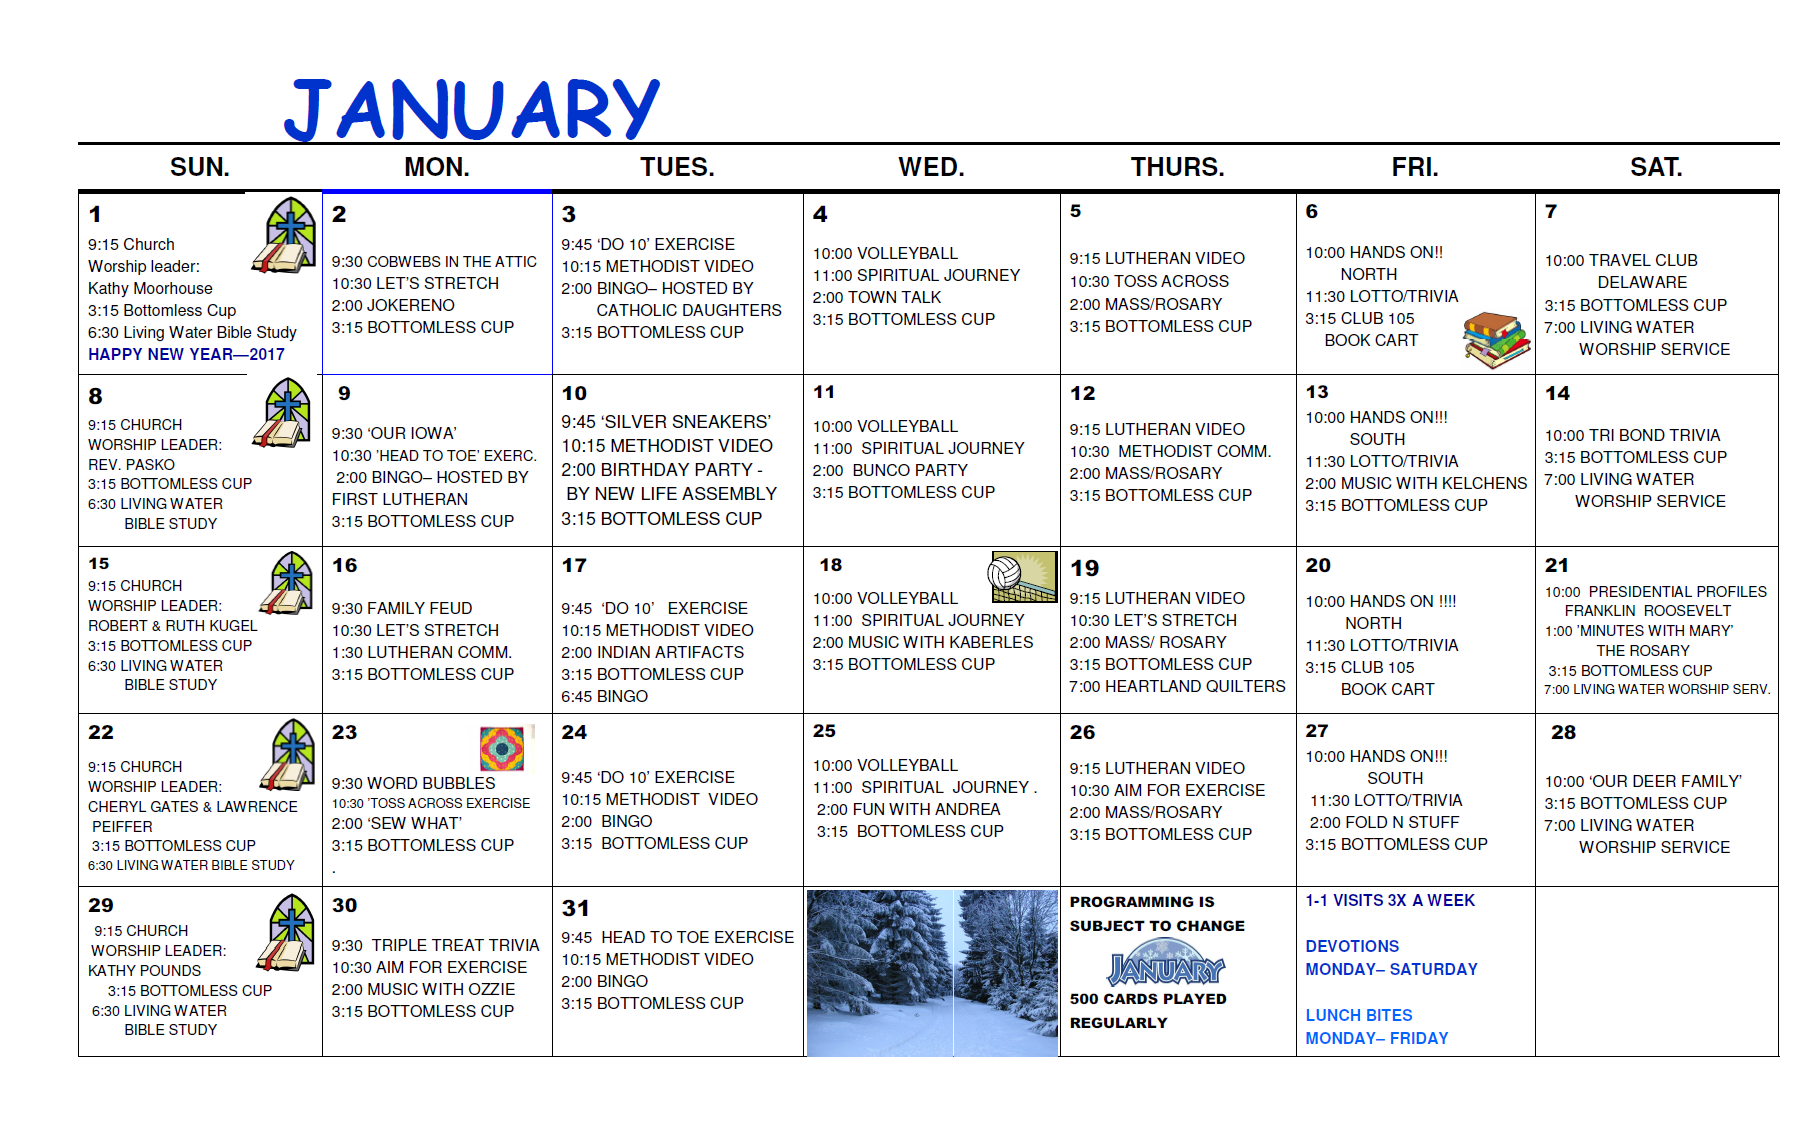 monthly activity calendar plantilla imagen principal